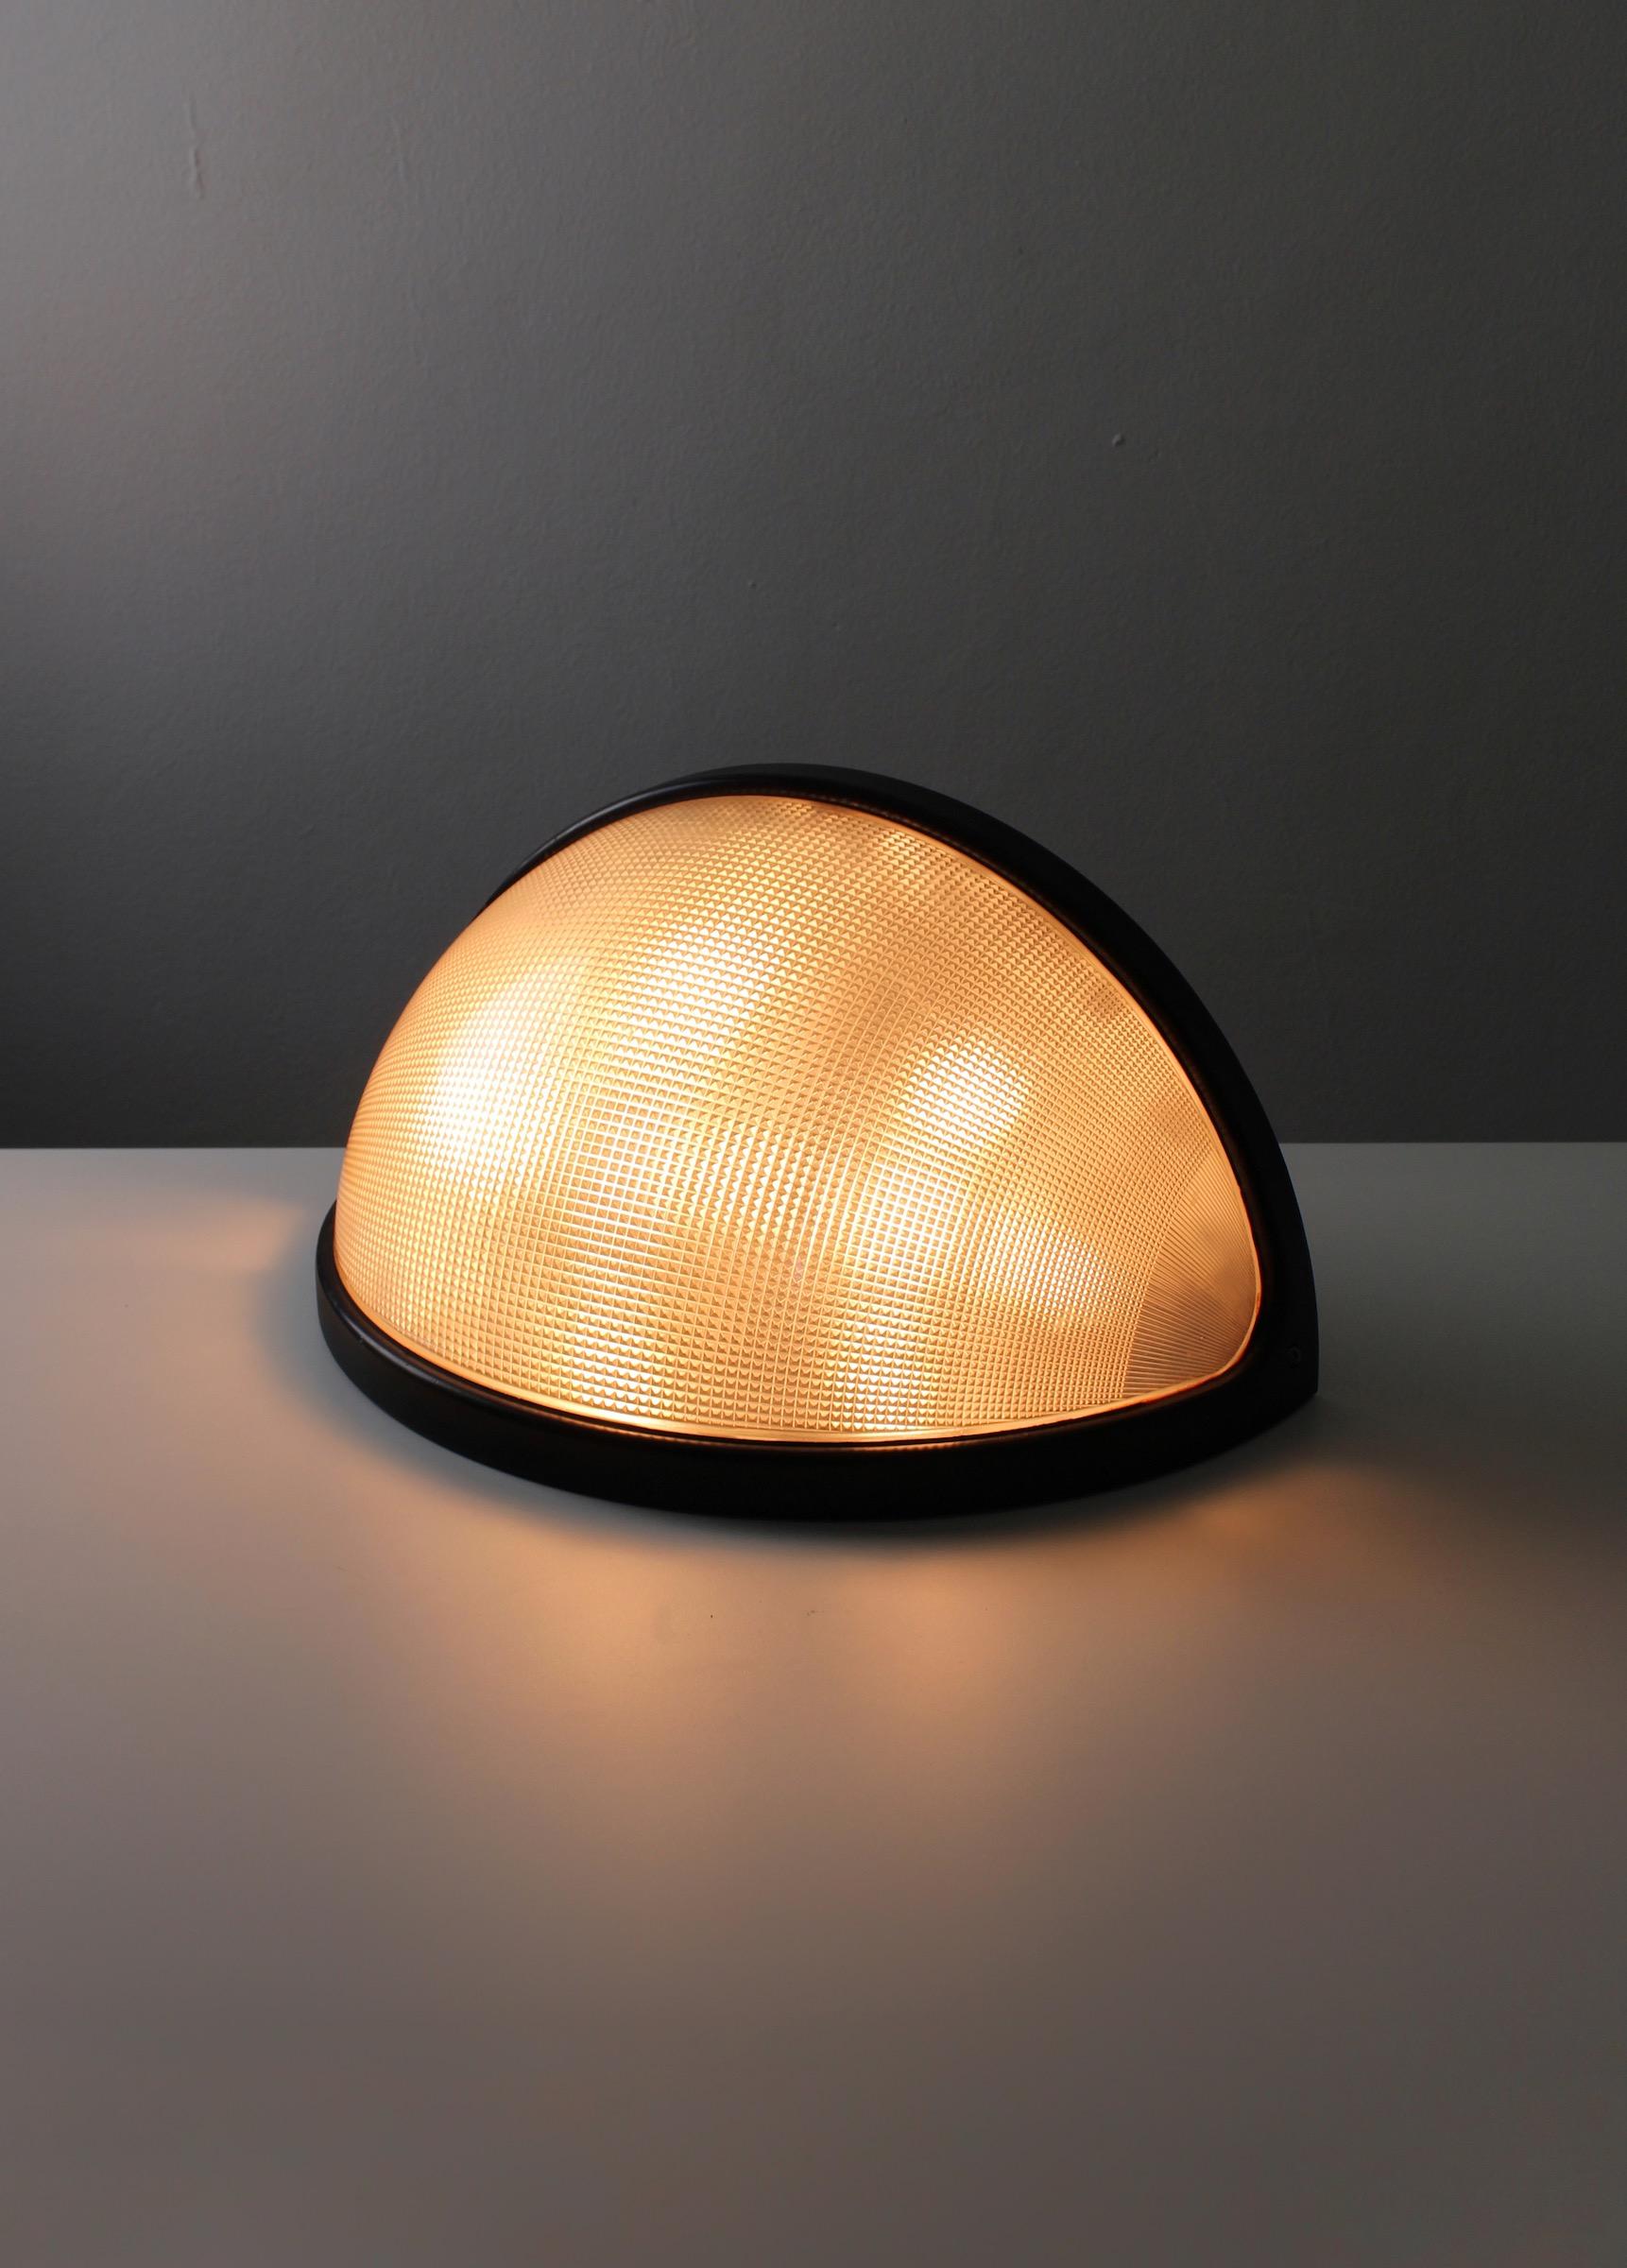 Grand lampadaire Totum, conçu par Marilena Bocatto, Gian Nicola Gigante et Antonio Zambusi. Produit par la société d'éclairage Zerbetto, basée à Padoue, en Italie. La lampe Totum est adaptée à un usage extérieur, et vous pouvez les apercevoir dans